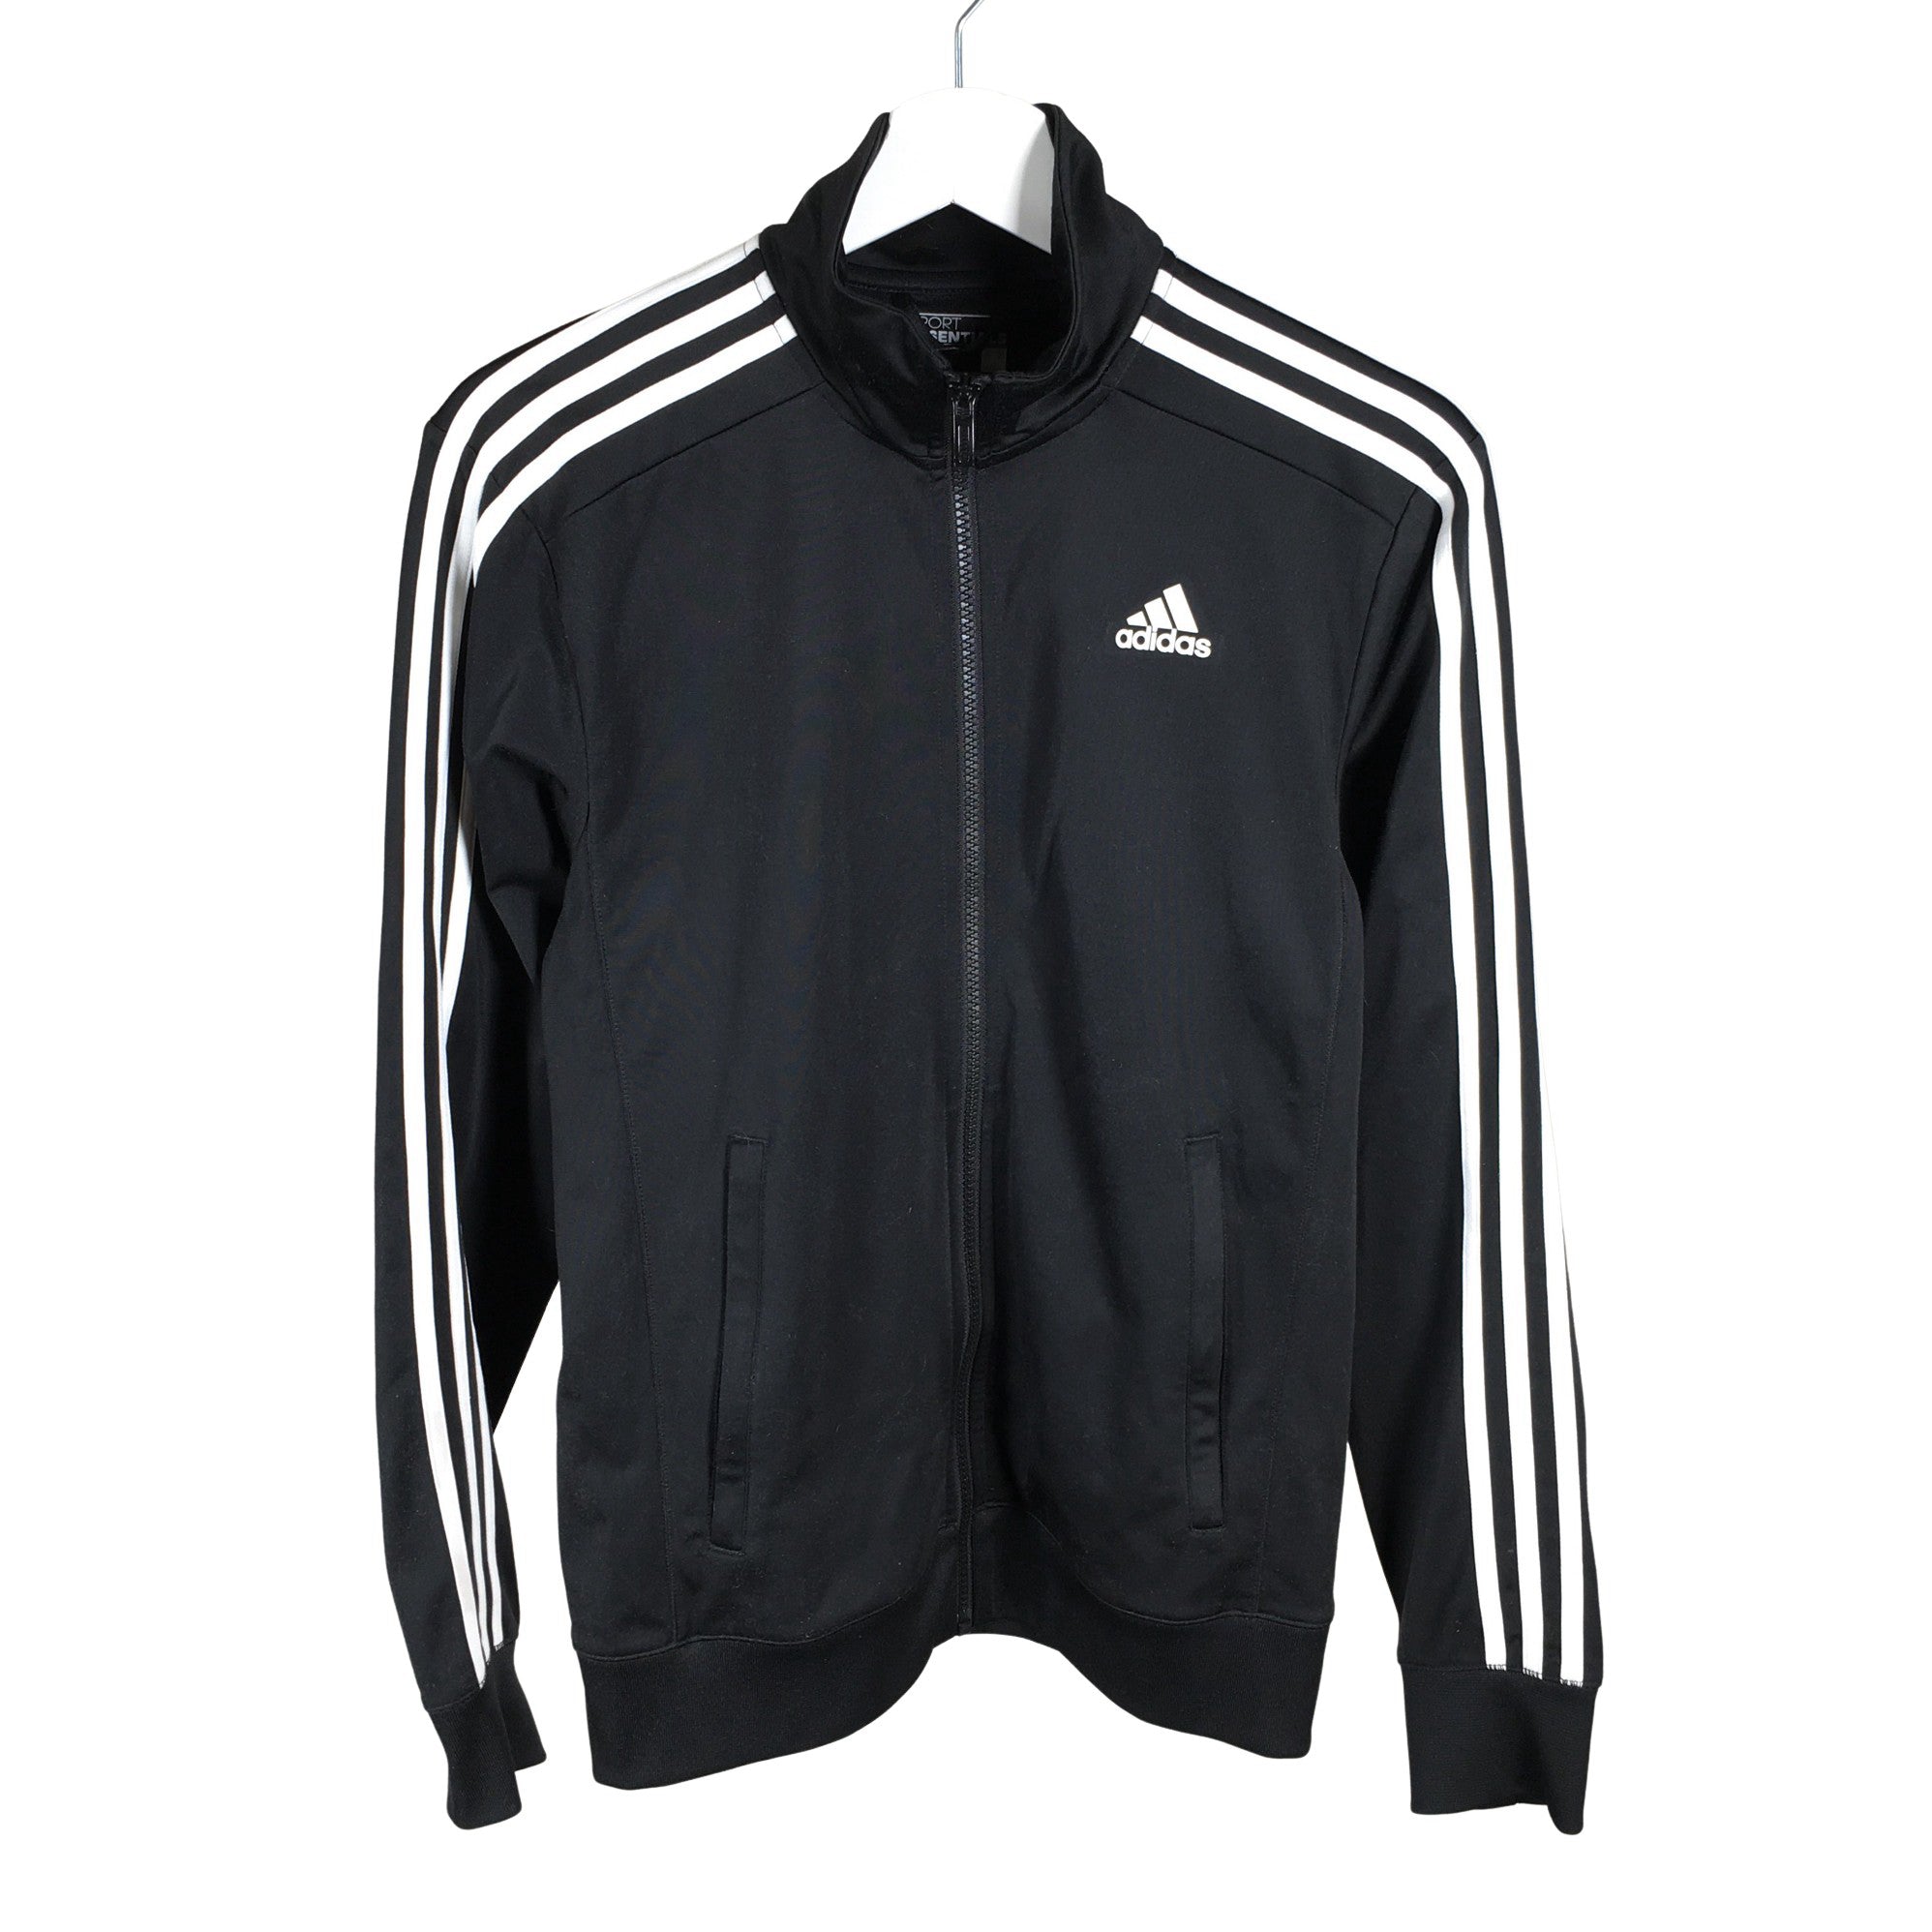 Adidas Track jacket, size S (Black) | Emmy